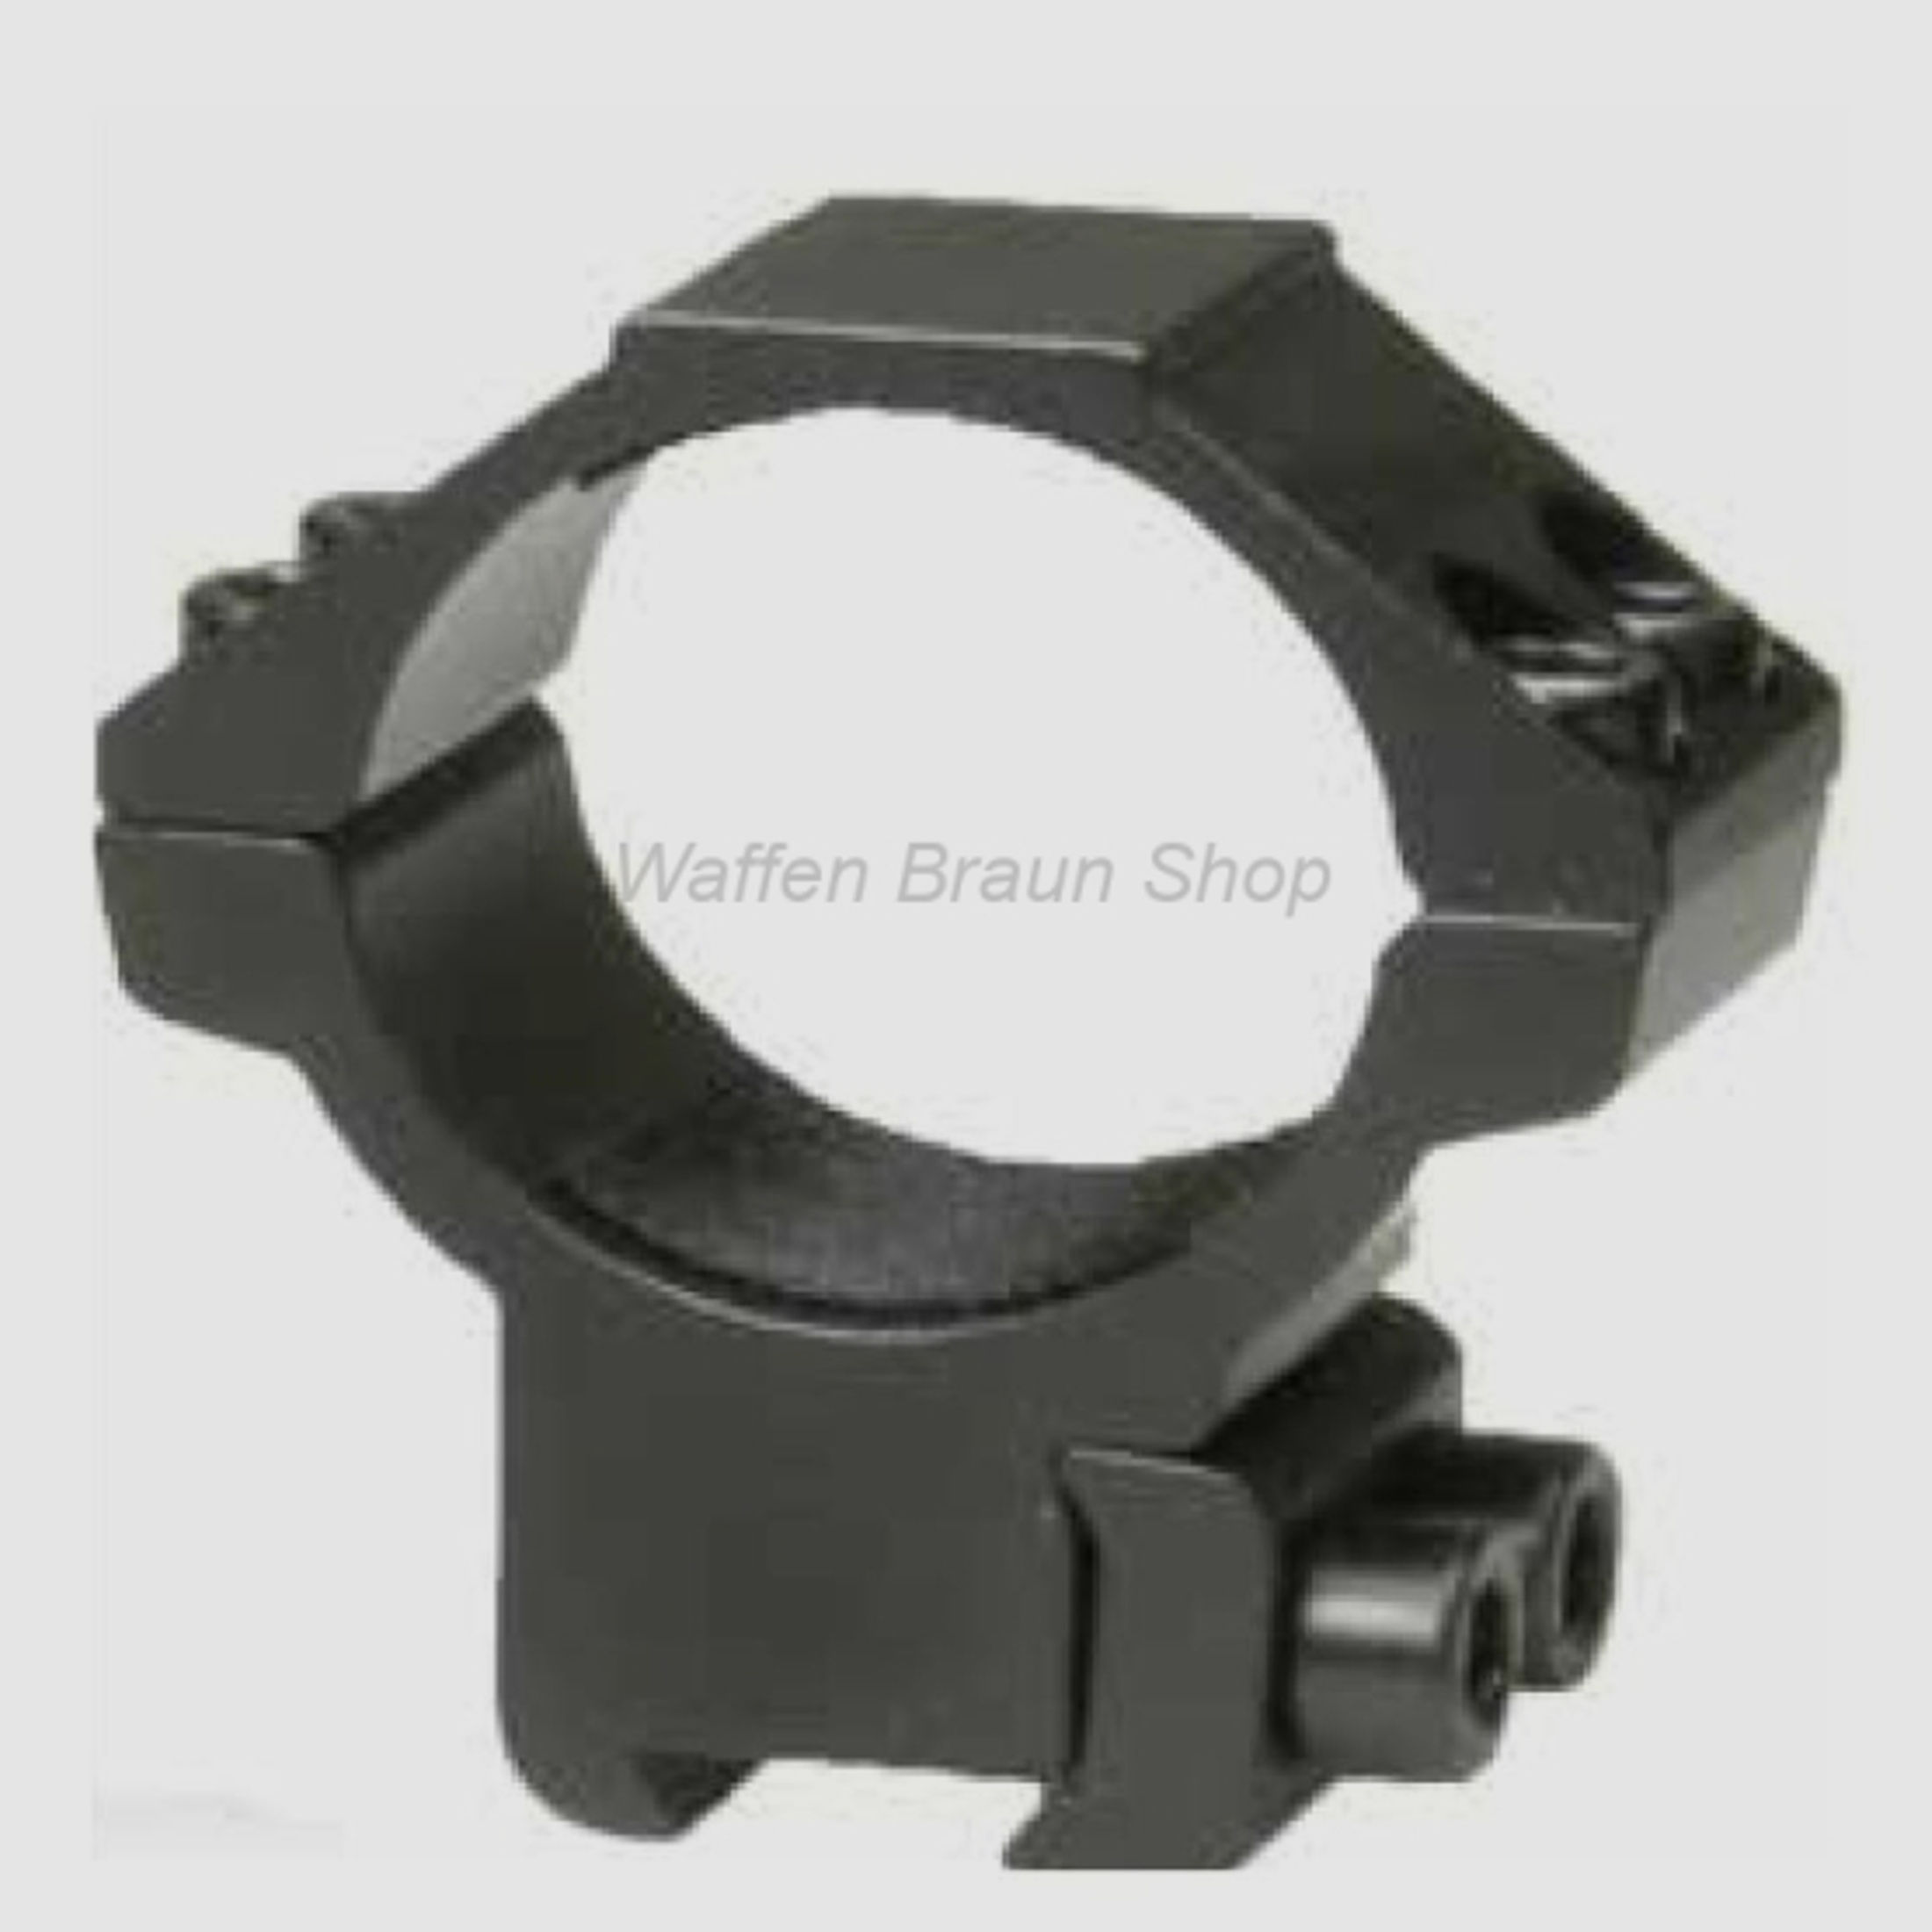 Bauer Ringmontage für 11mm Prismenschiene, Schwarz matt, 30mm, Flach